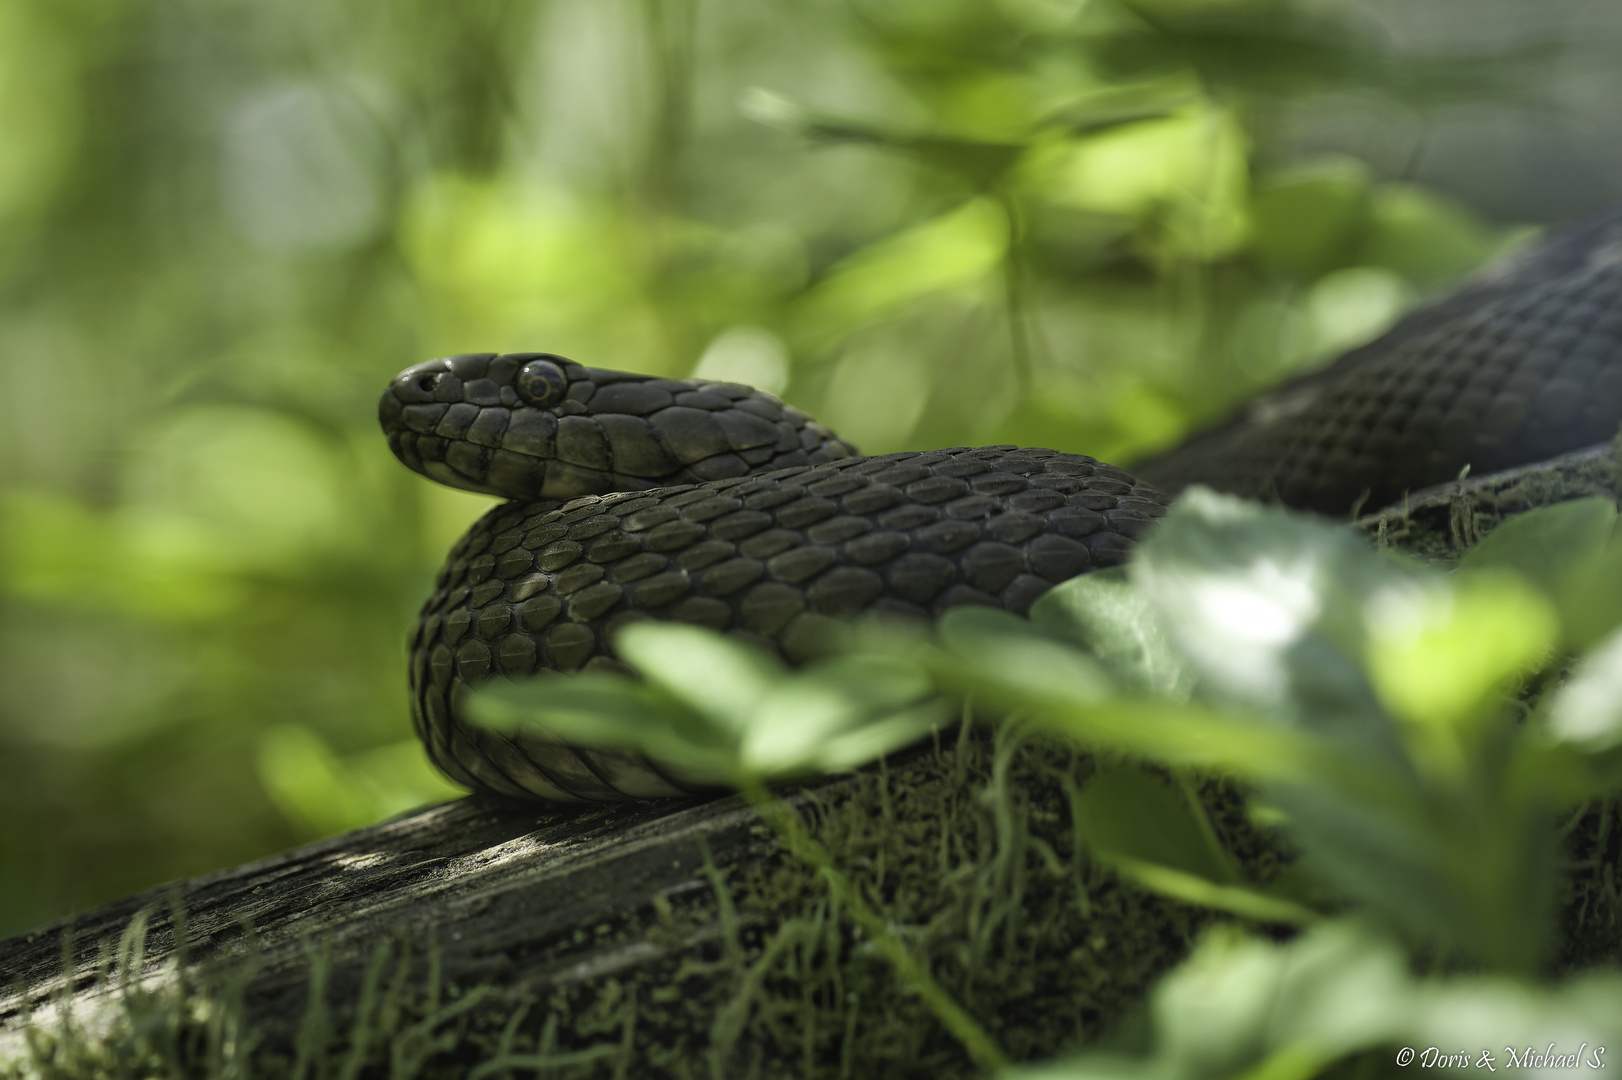 Würfelnatter / Dice snake